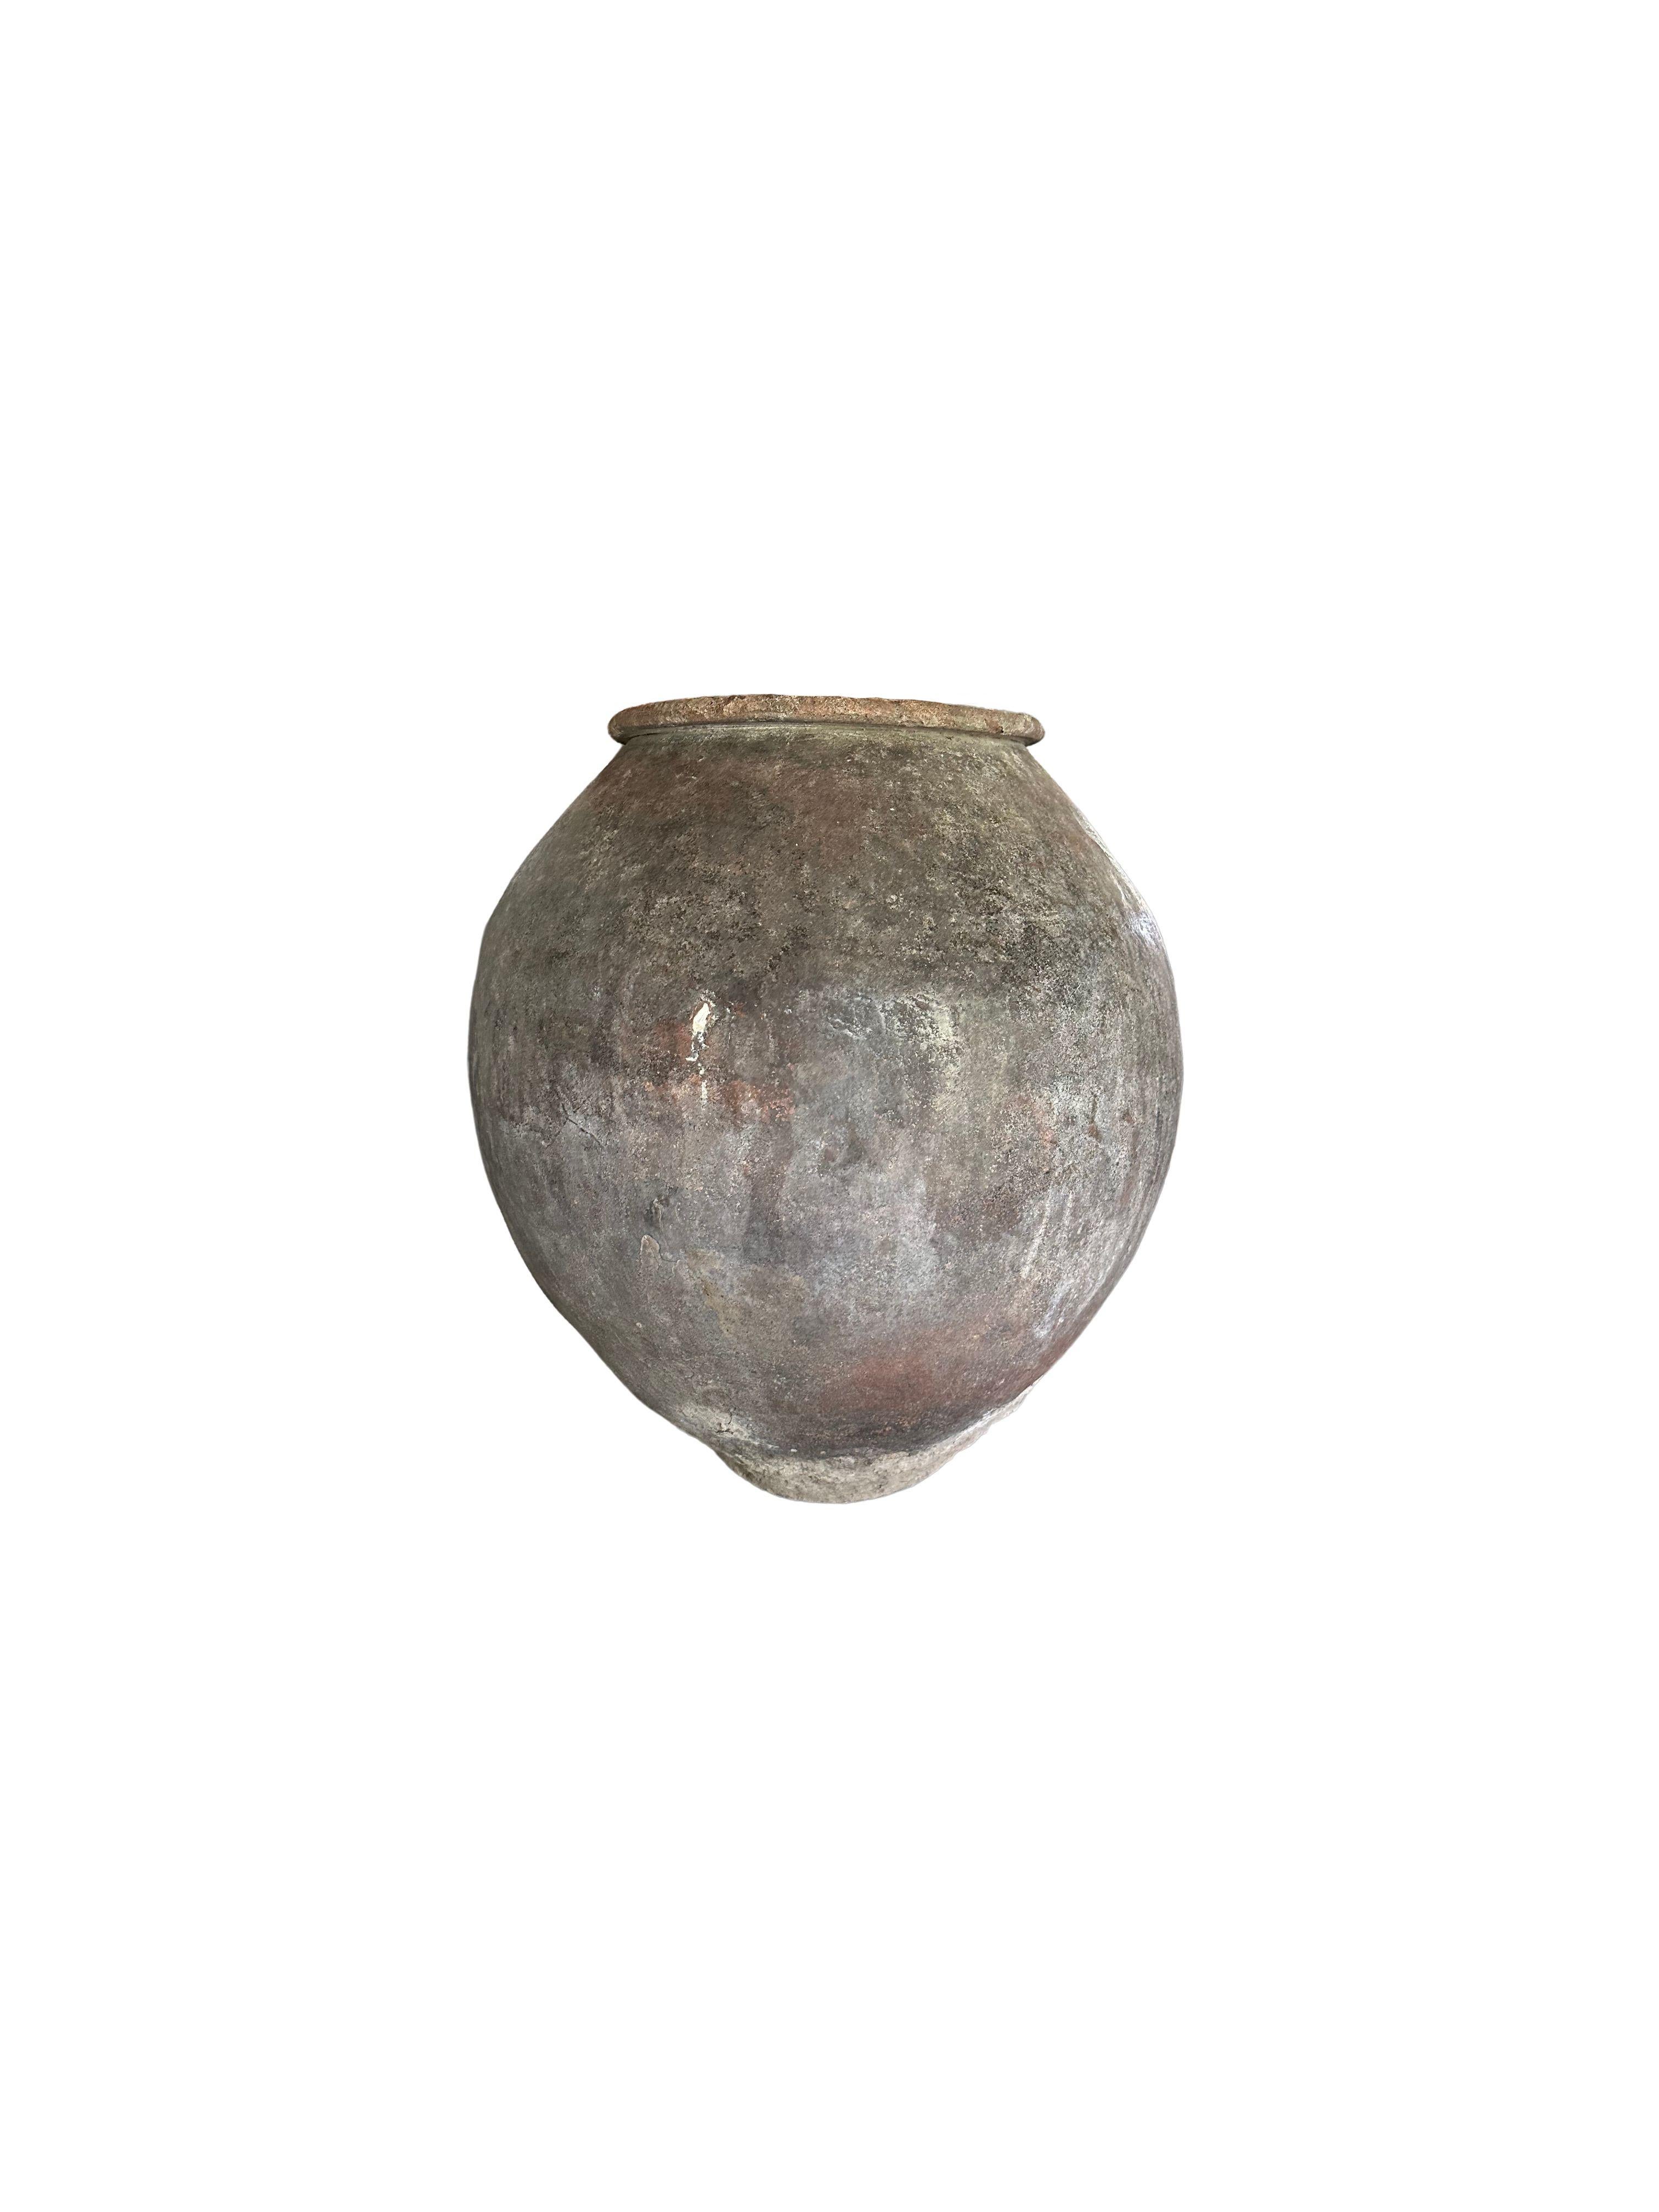 Indonesian Antique Javanese Water Jar, Indonesia, c. 1900